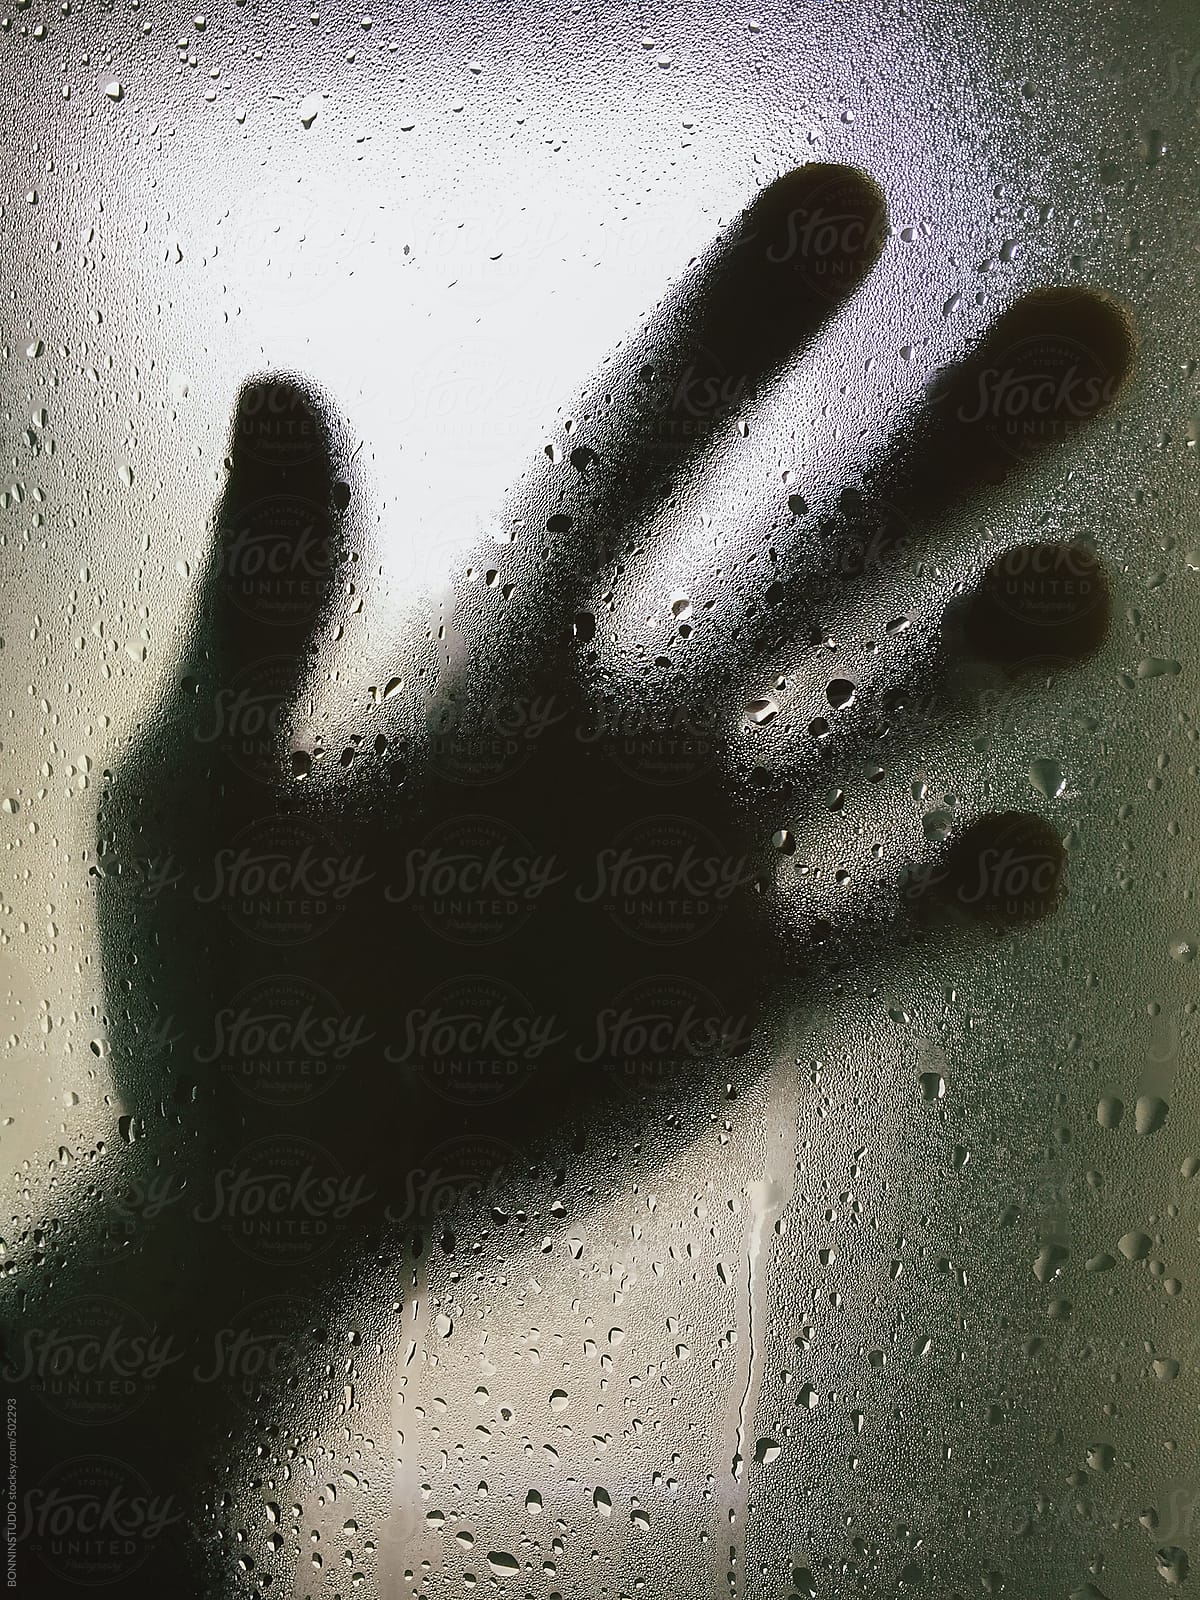 Hand on a wet glass inside a shower.